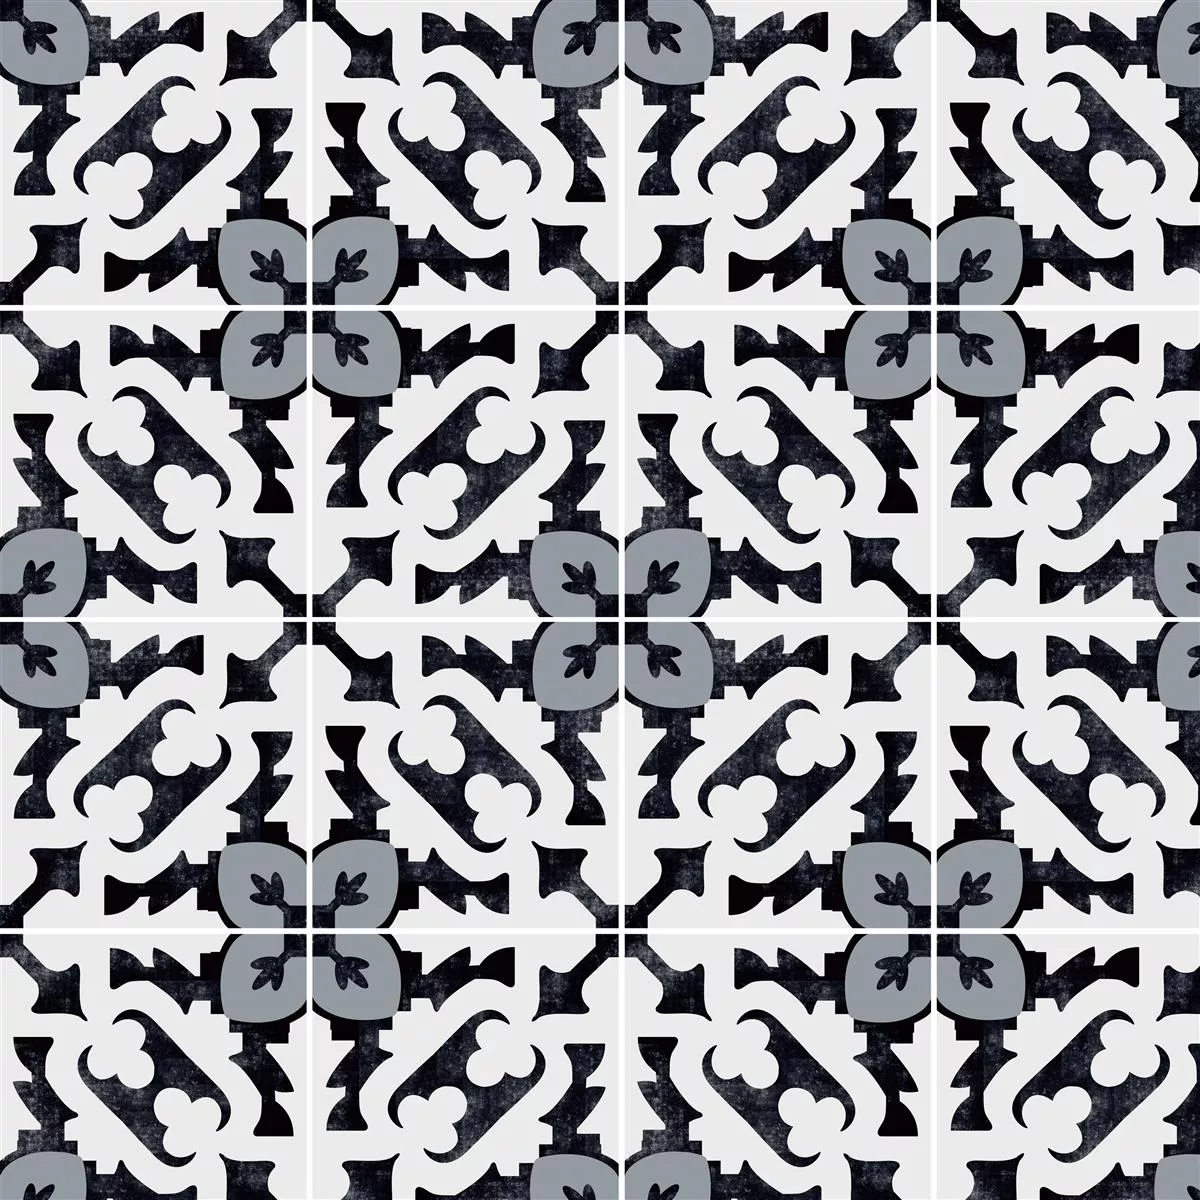 Sample Cement floor tiles optics Osborn 20x20cm